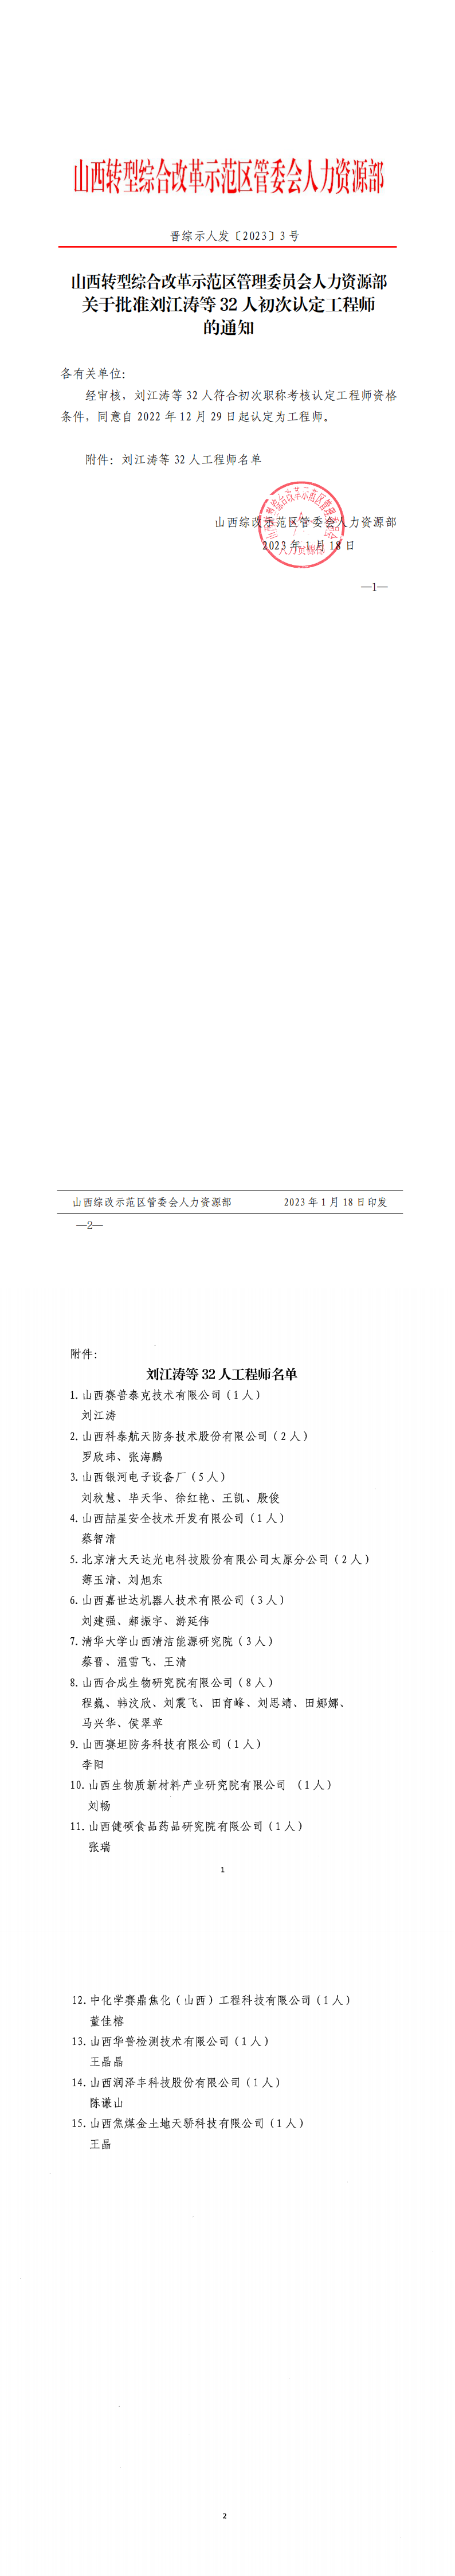 山西转型综合改革示范区管理委员会人力资源部关于批准刘江涛等32人初次认定工程师的通知_0.png